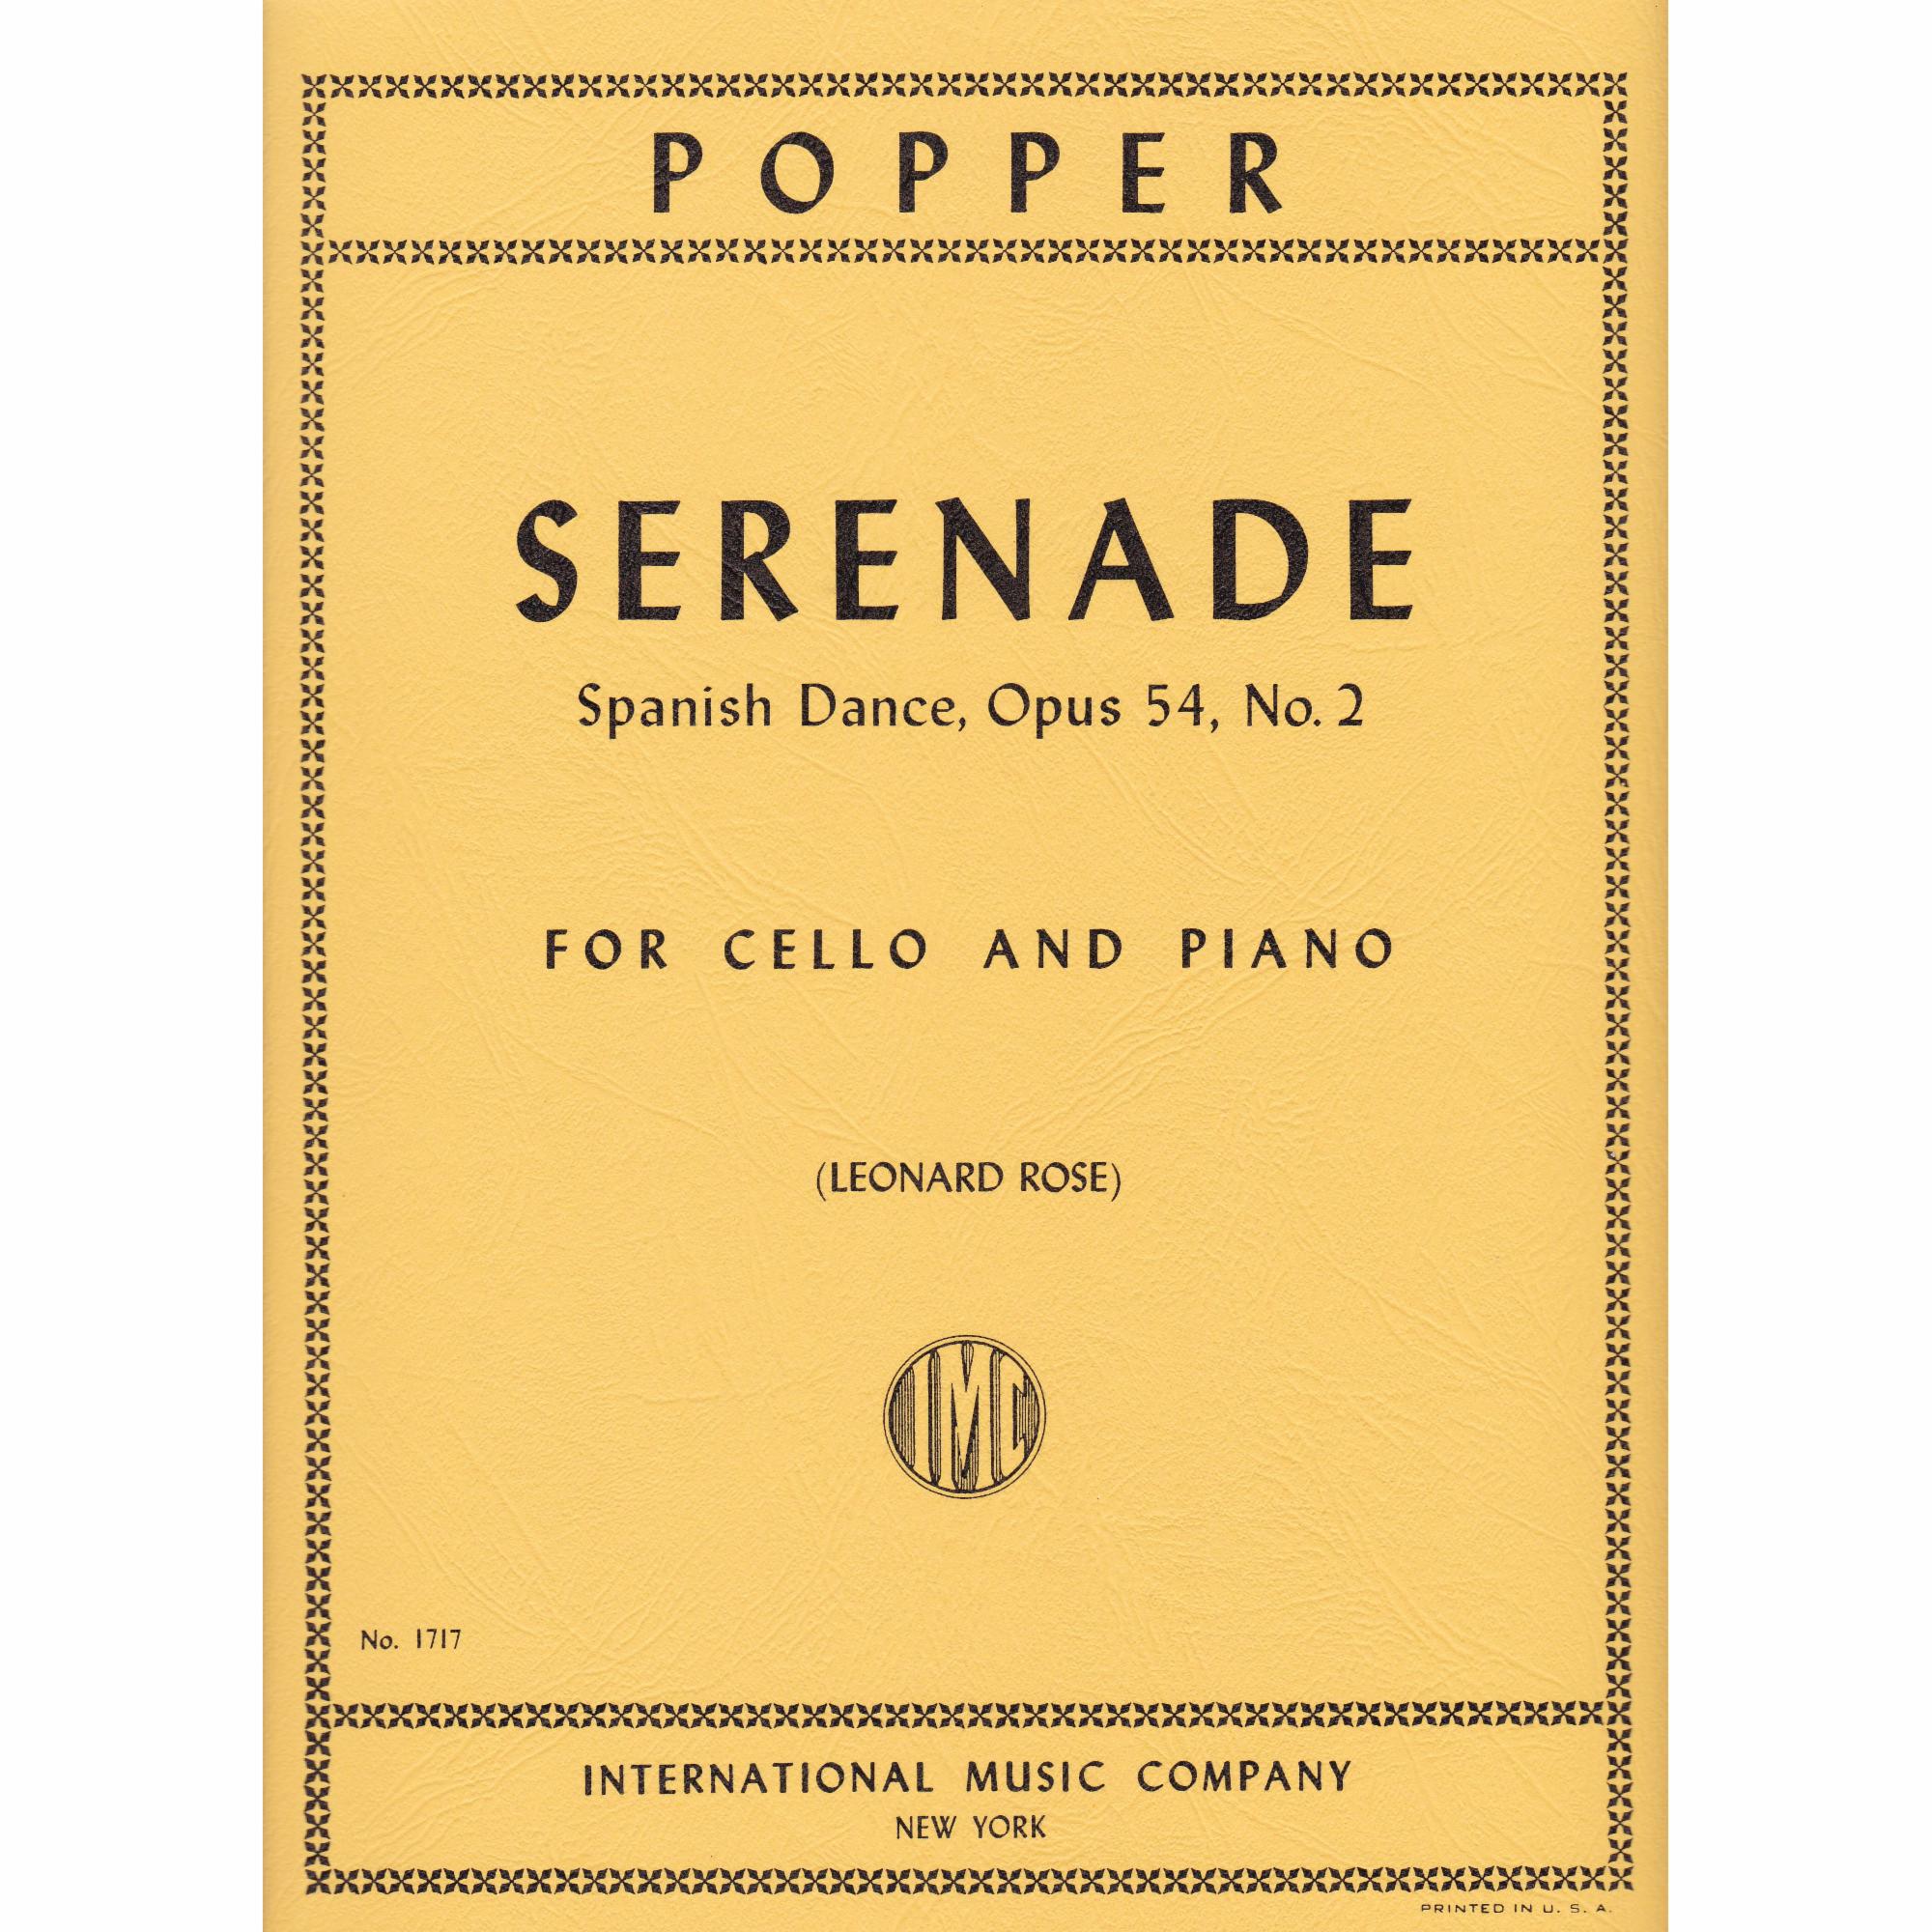 Serenade for Cello and Piano, Op. 54, No. 2